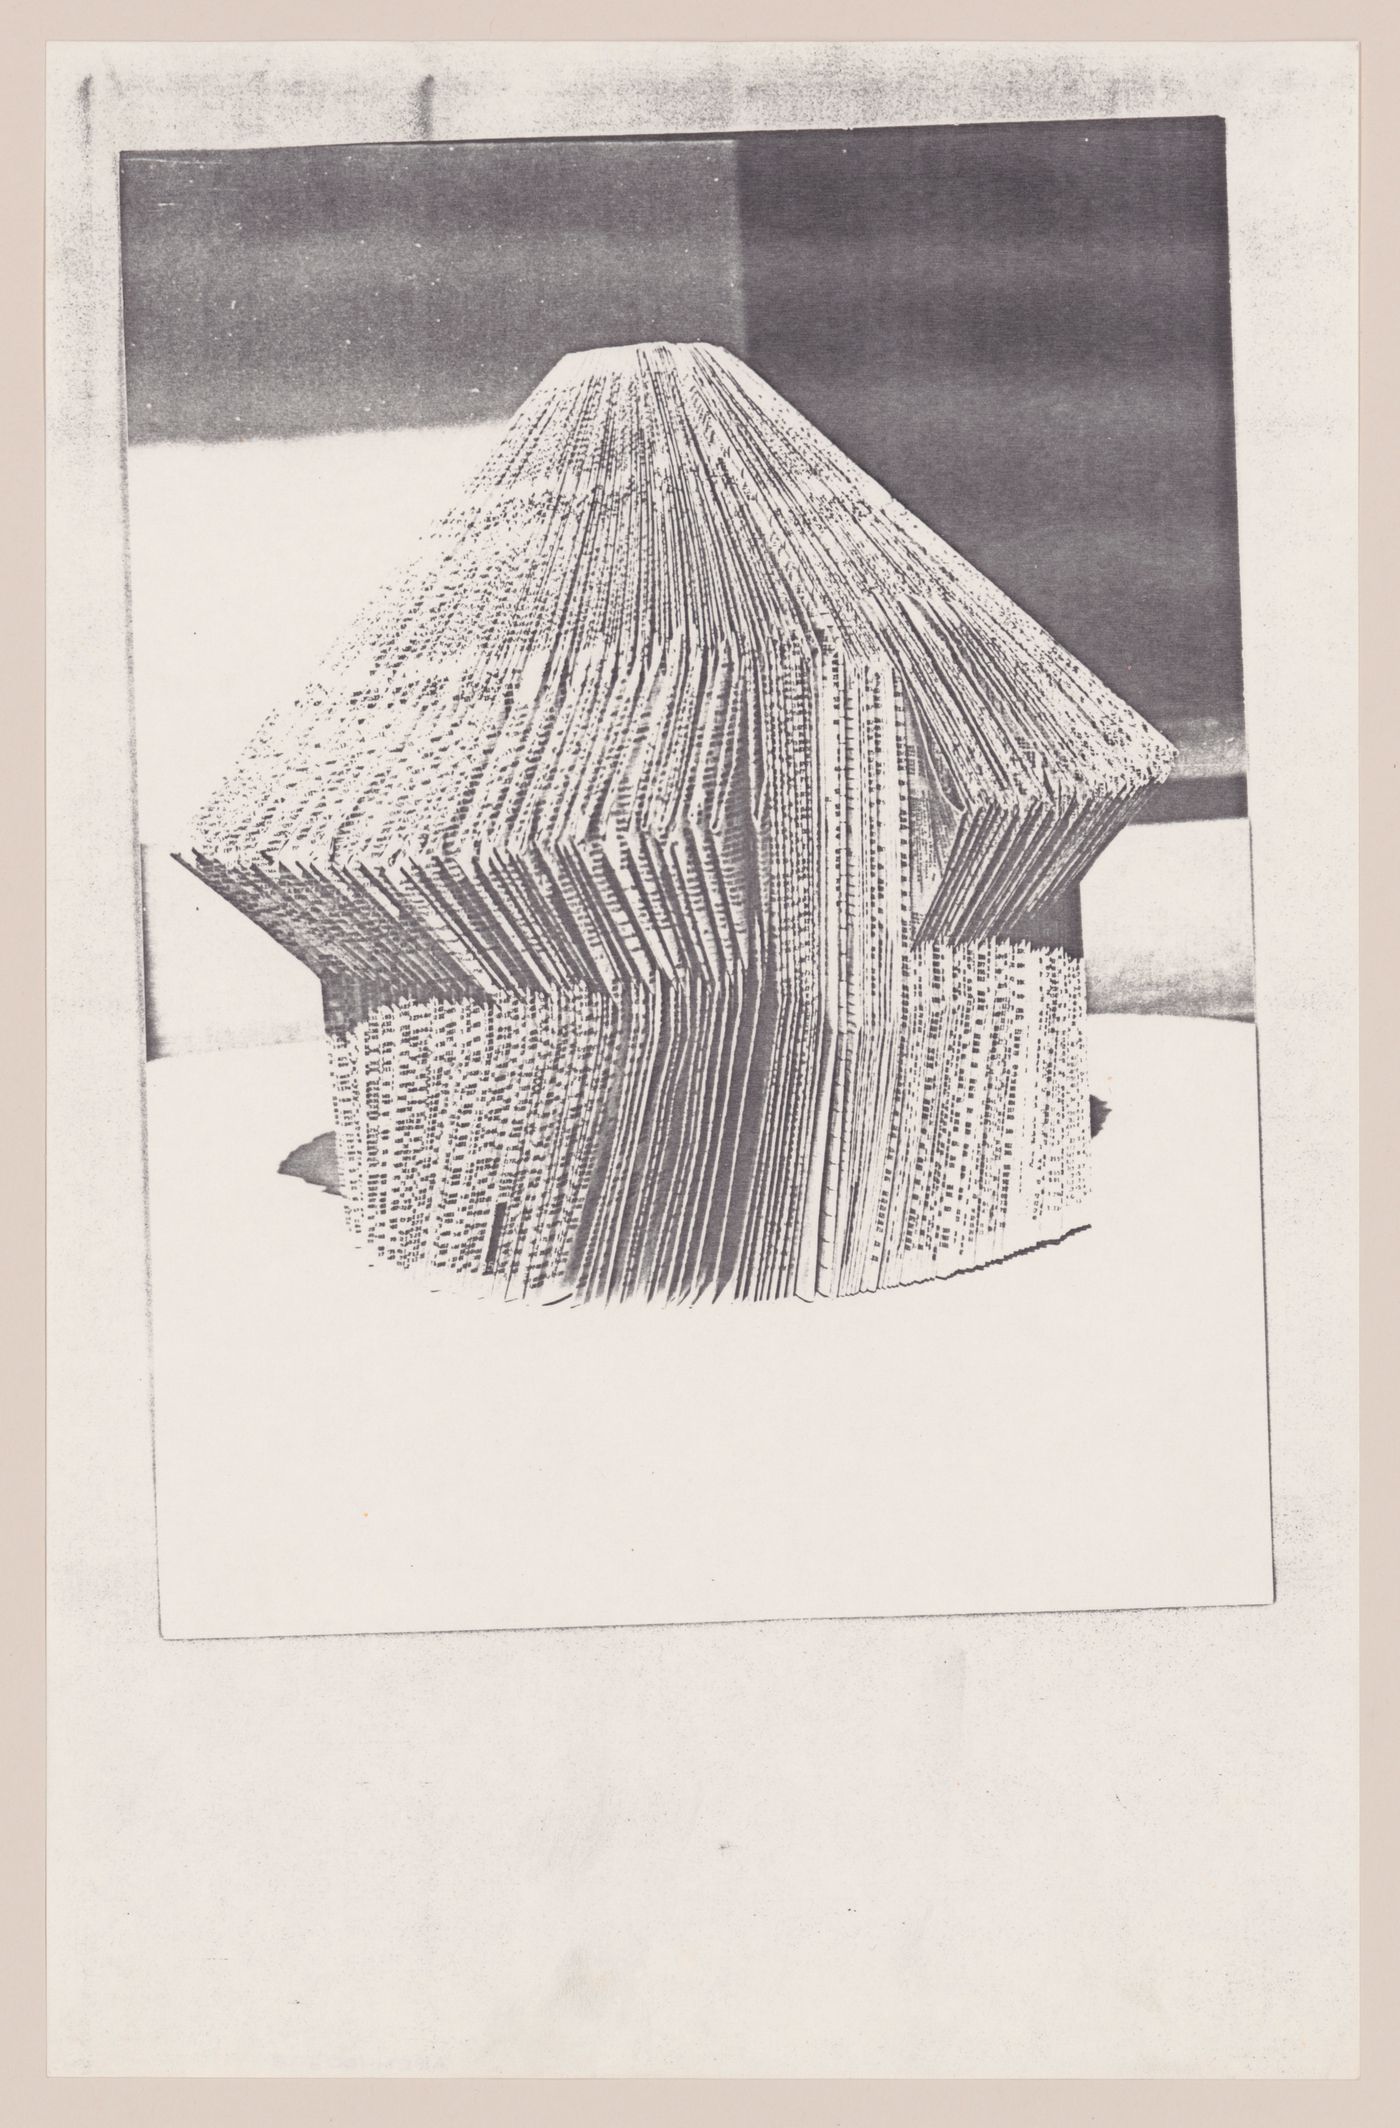 Photograph of a model for Architecttura di carta [Paper architecture]